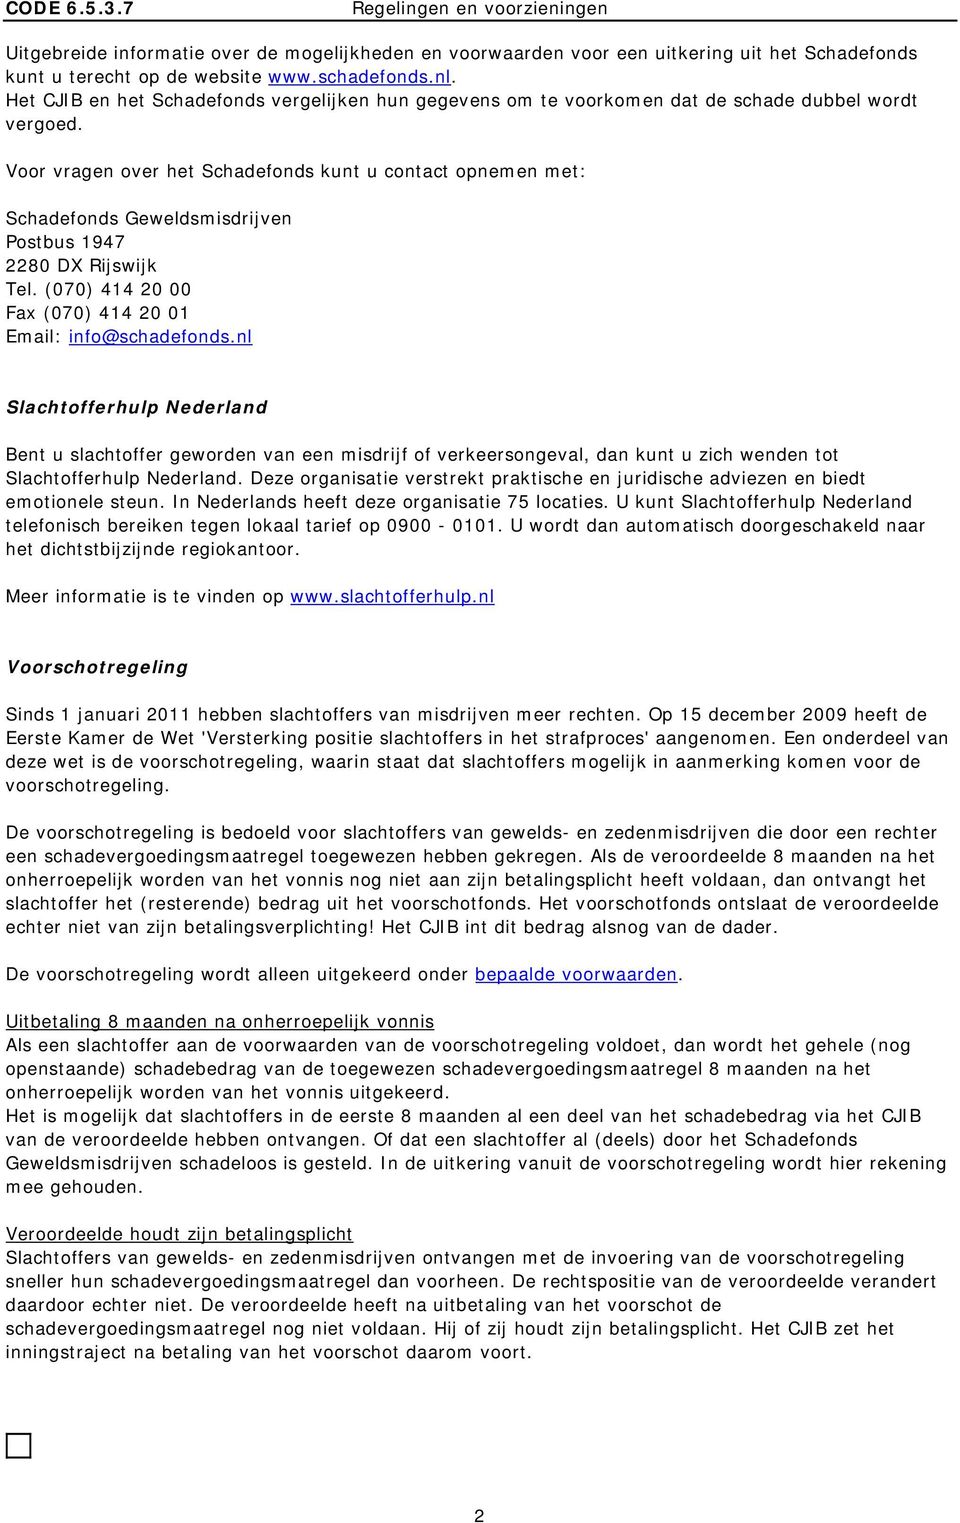 Voor vragen over het Schadefonds kunt u contact opnemen met: Schadefonds Geweldsmisdrijven Postbus 1947 2280 DX Rijswijk Tel. (070) 414 20 00 Fax (070) 414 20 01 Email: info@schadefonds.